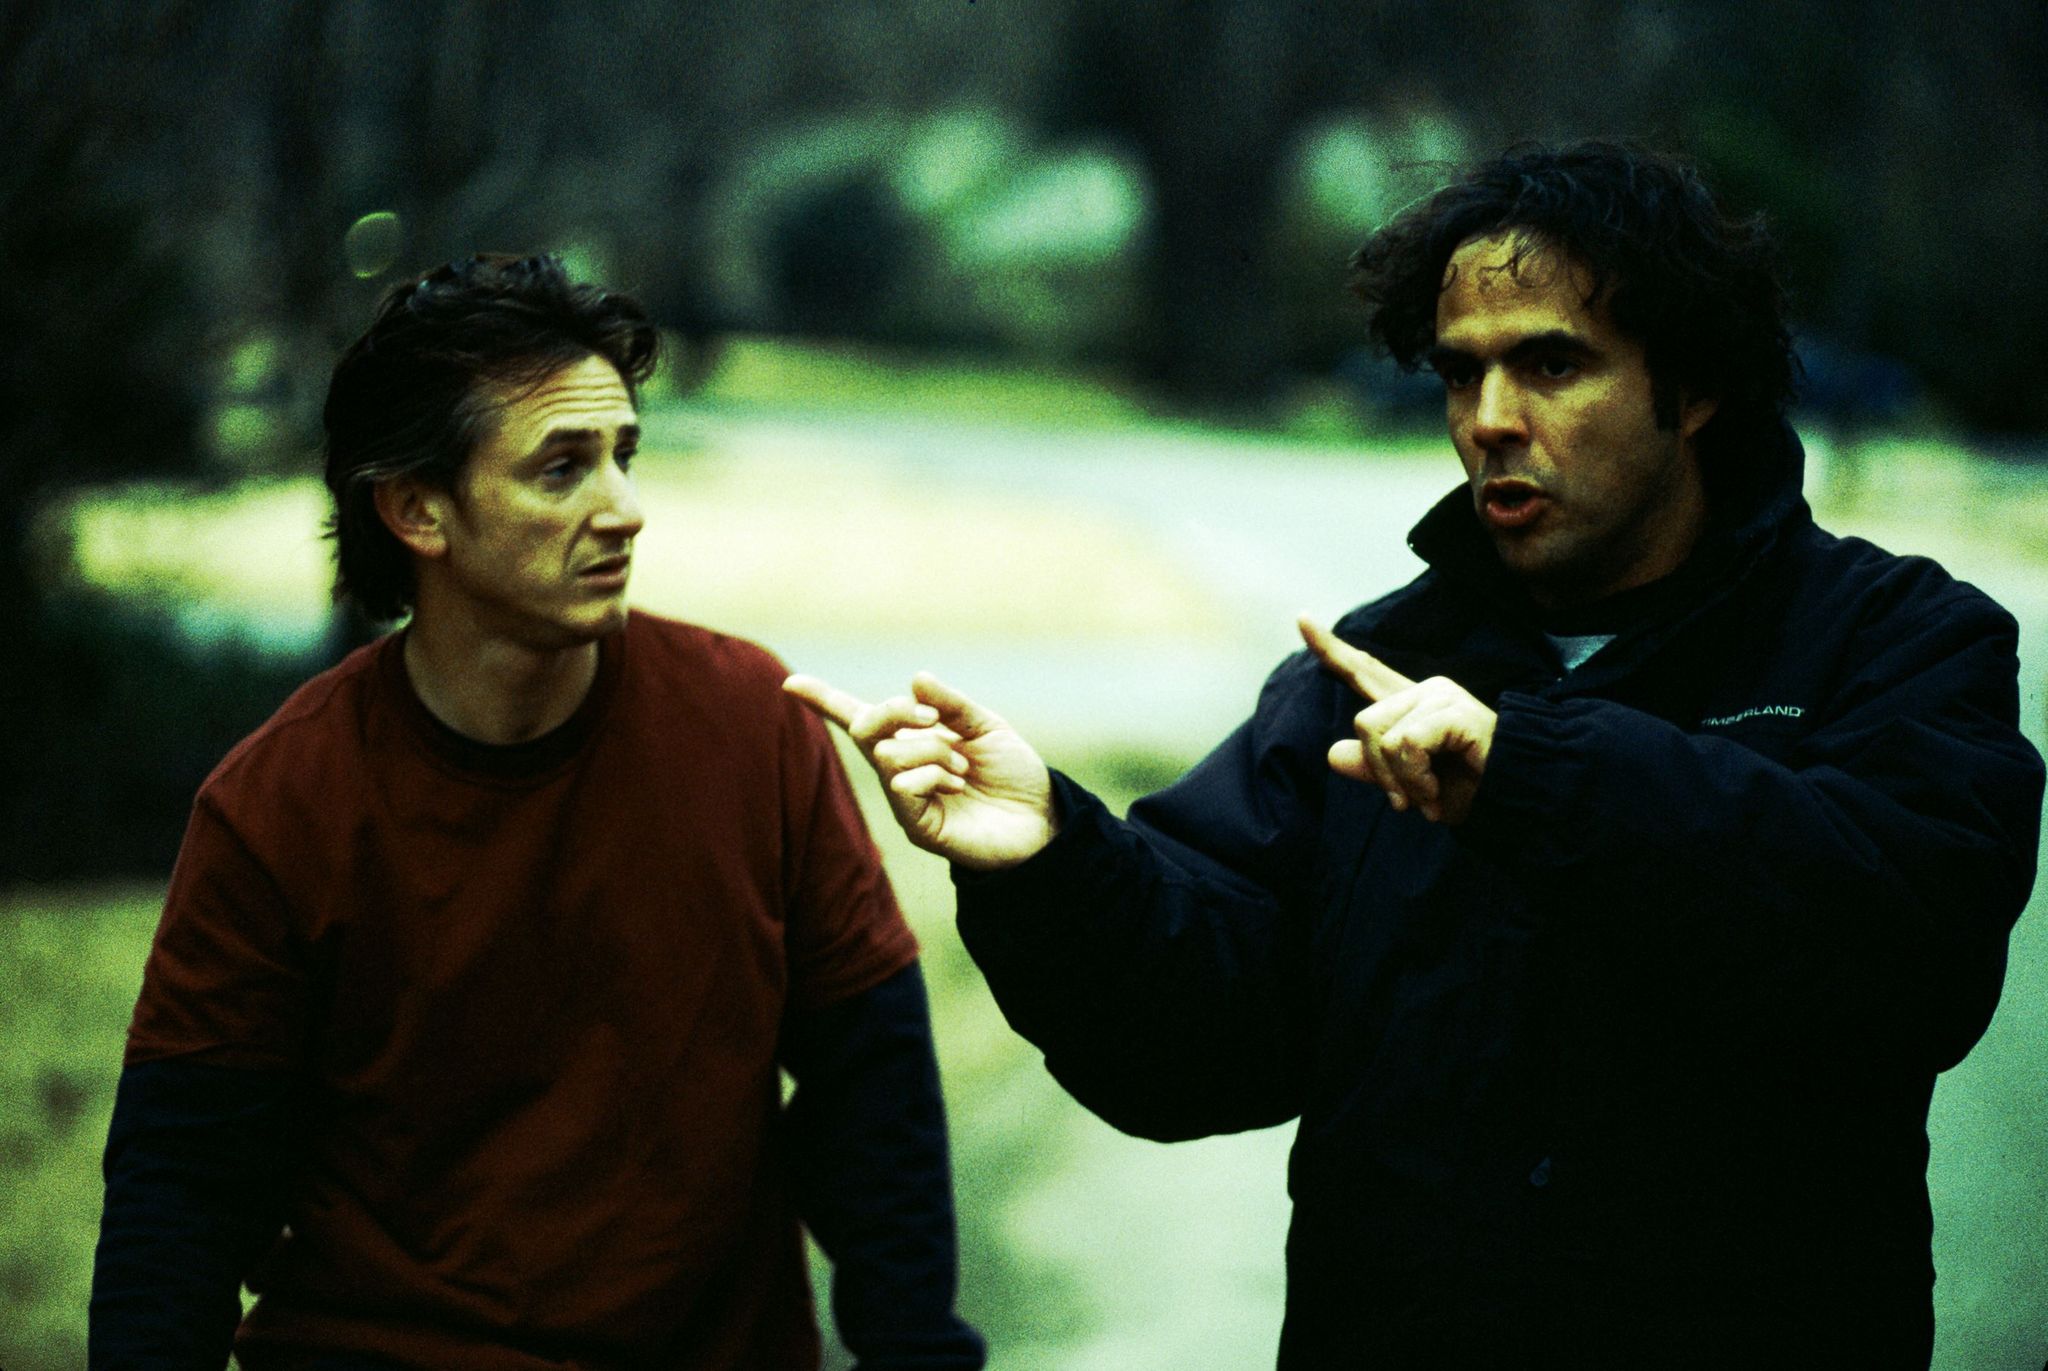 Still of Sean Penn and Alejandro González Iñárritu in 21 gramas (2003)